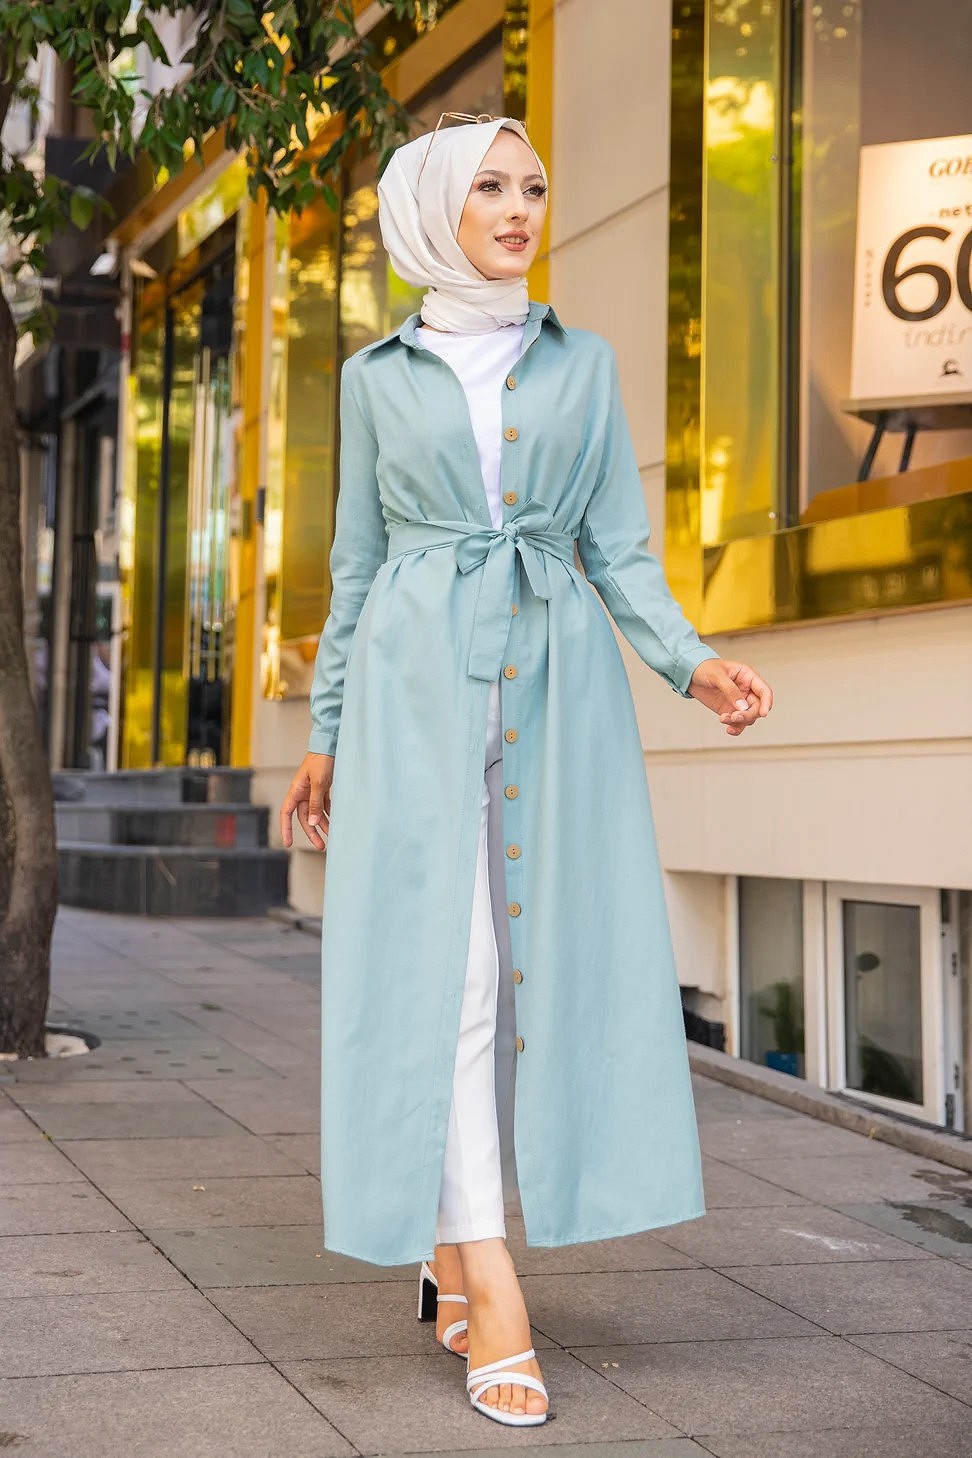 Ensemble Robe et Veste Gilet (Vetement femme voilée et Mode islamique) -  Couleur bleu roi - Prêt à porter et accessoires sur